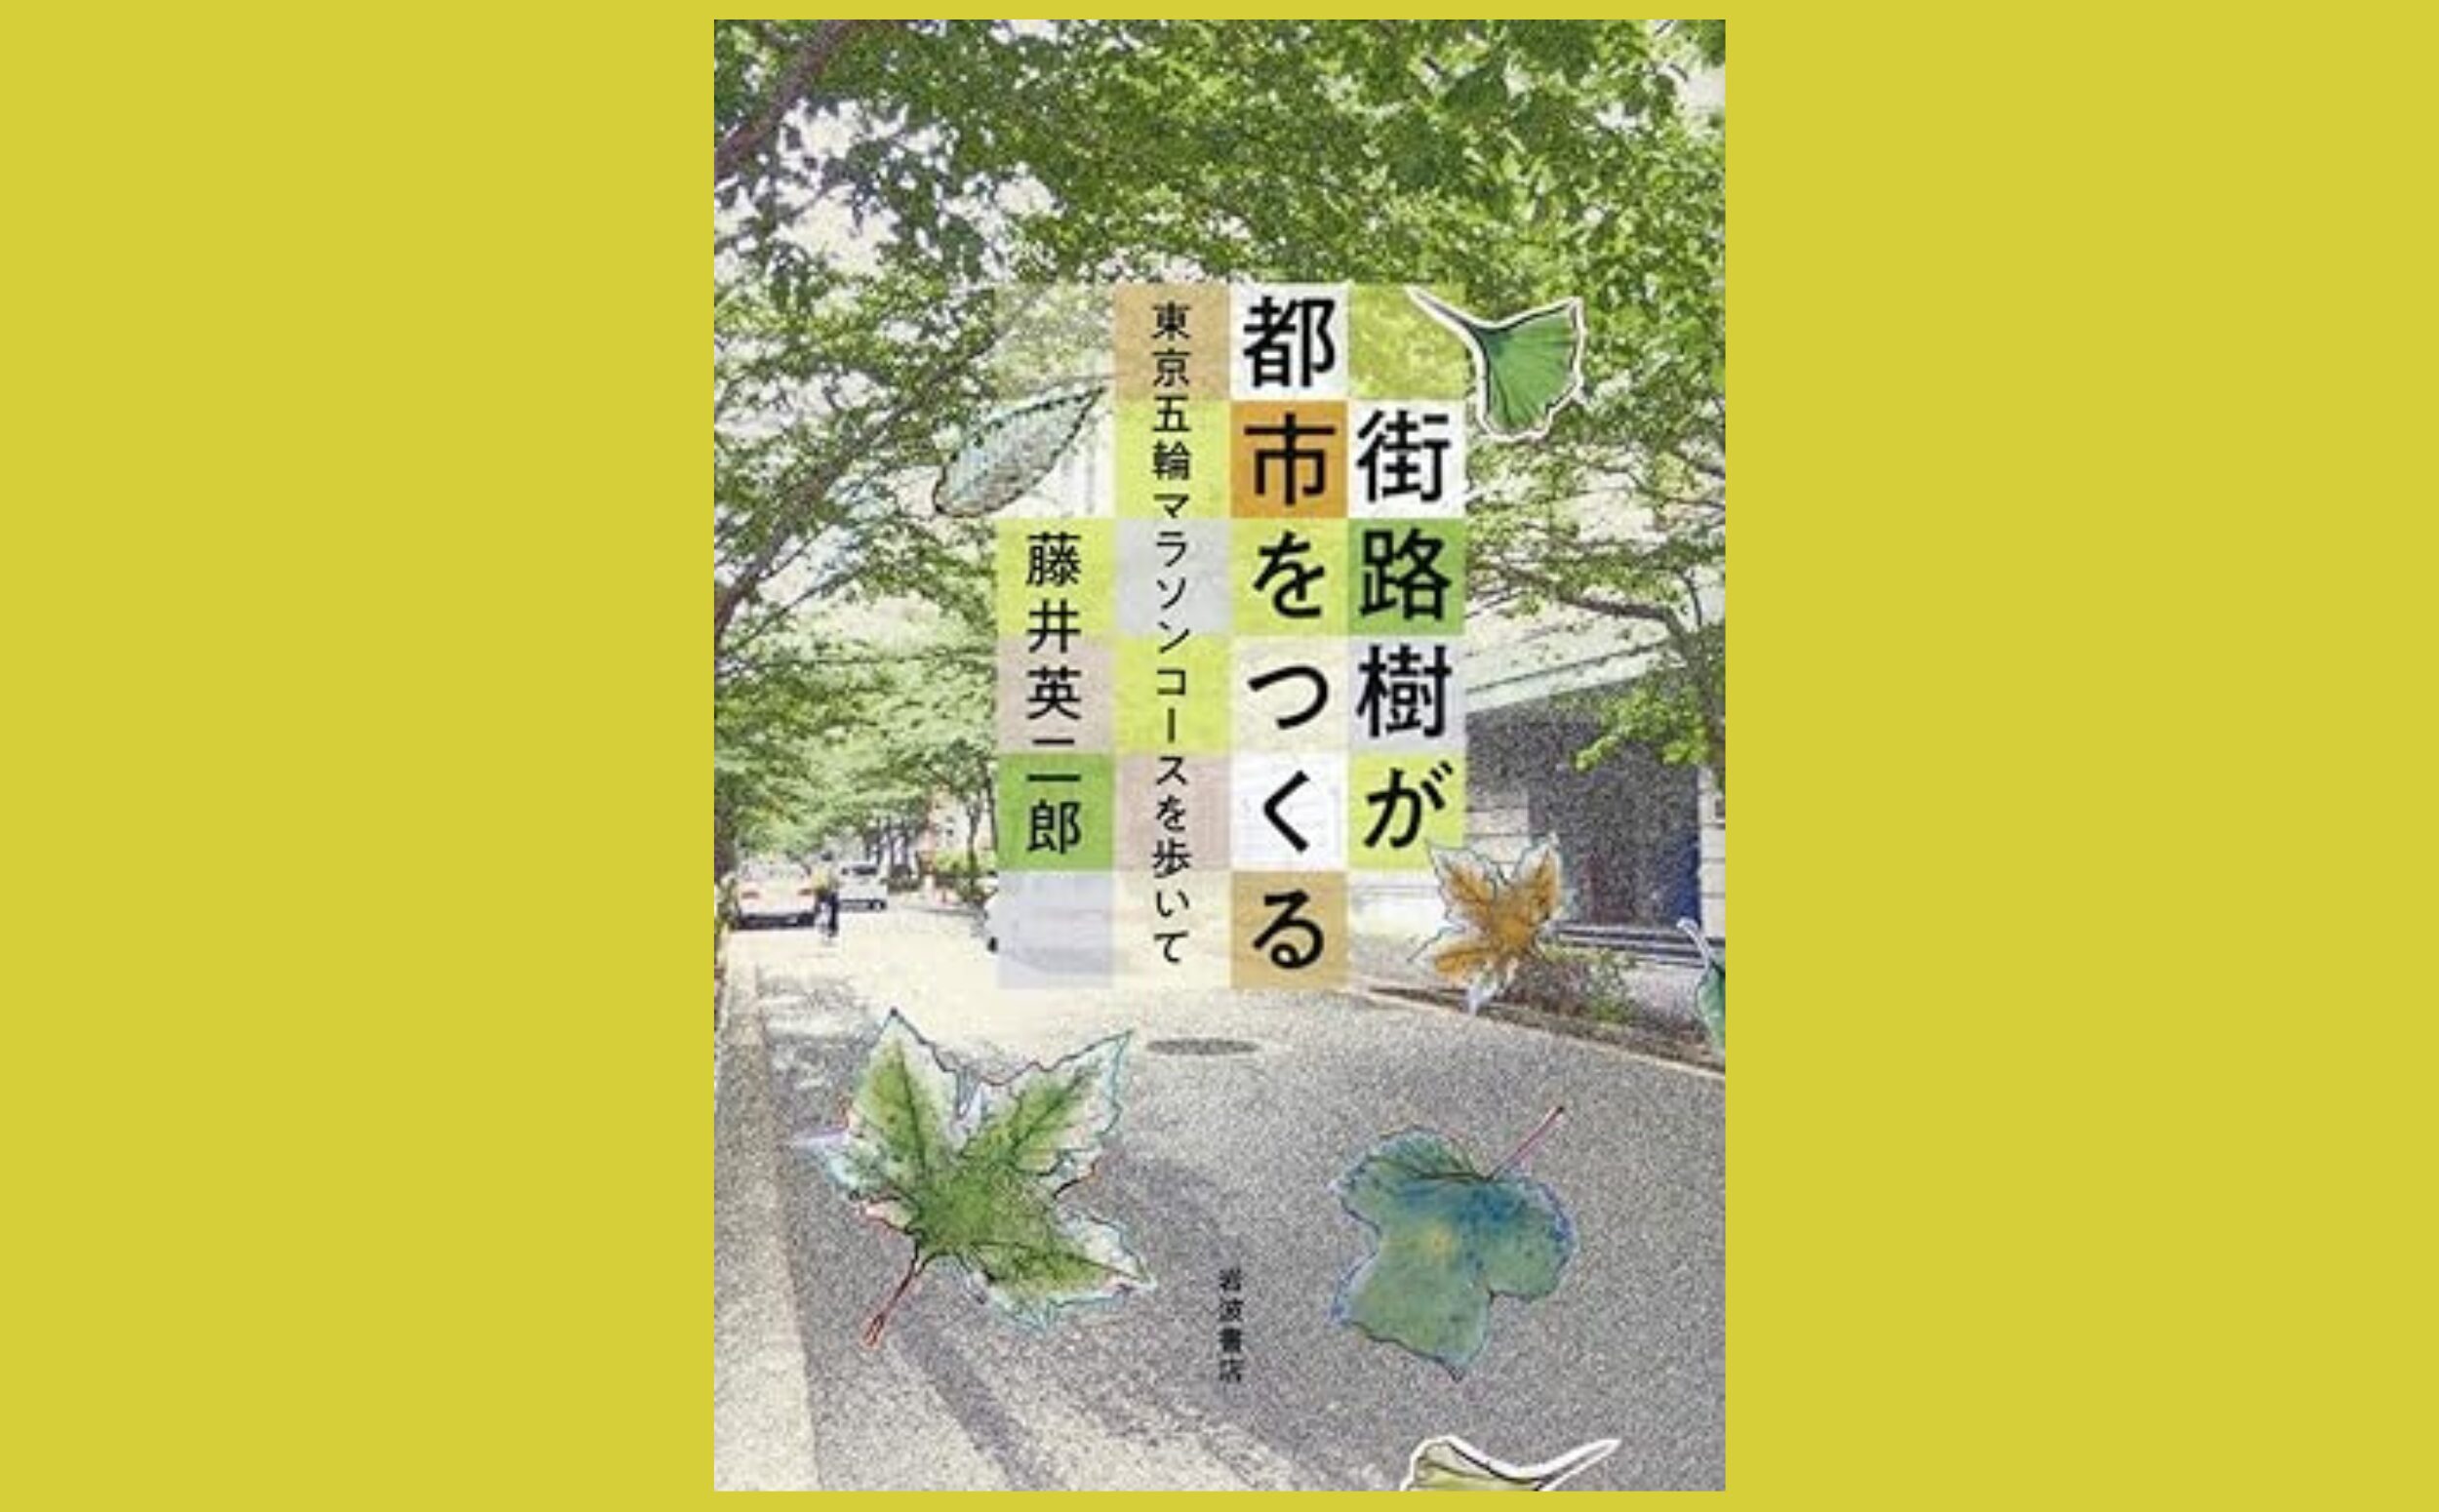 猛暑をしのぐ緑の日傘　自然樹形と樹冠最大化『街路樹が都市をつくる』東京五輪マラソンコースを歩いて